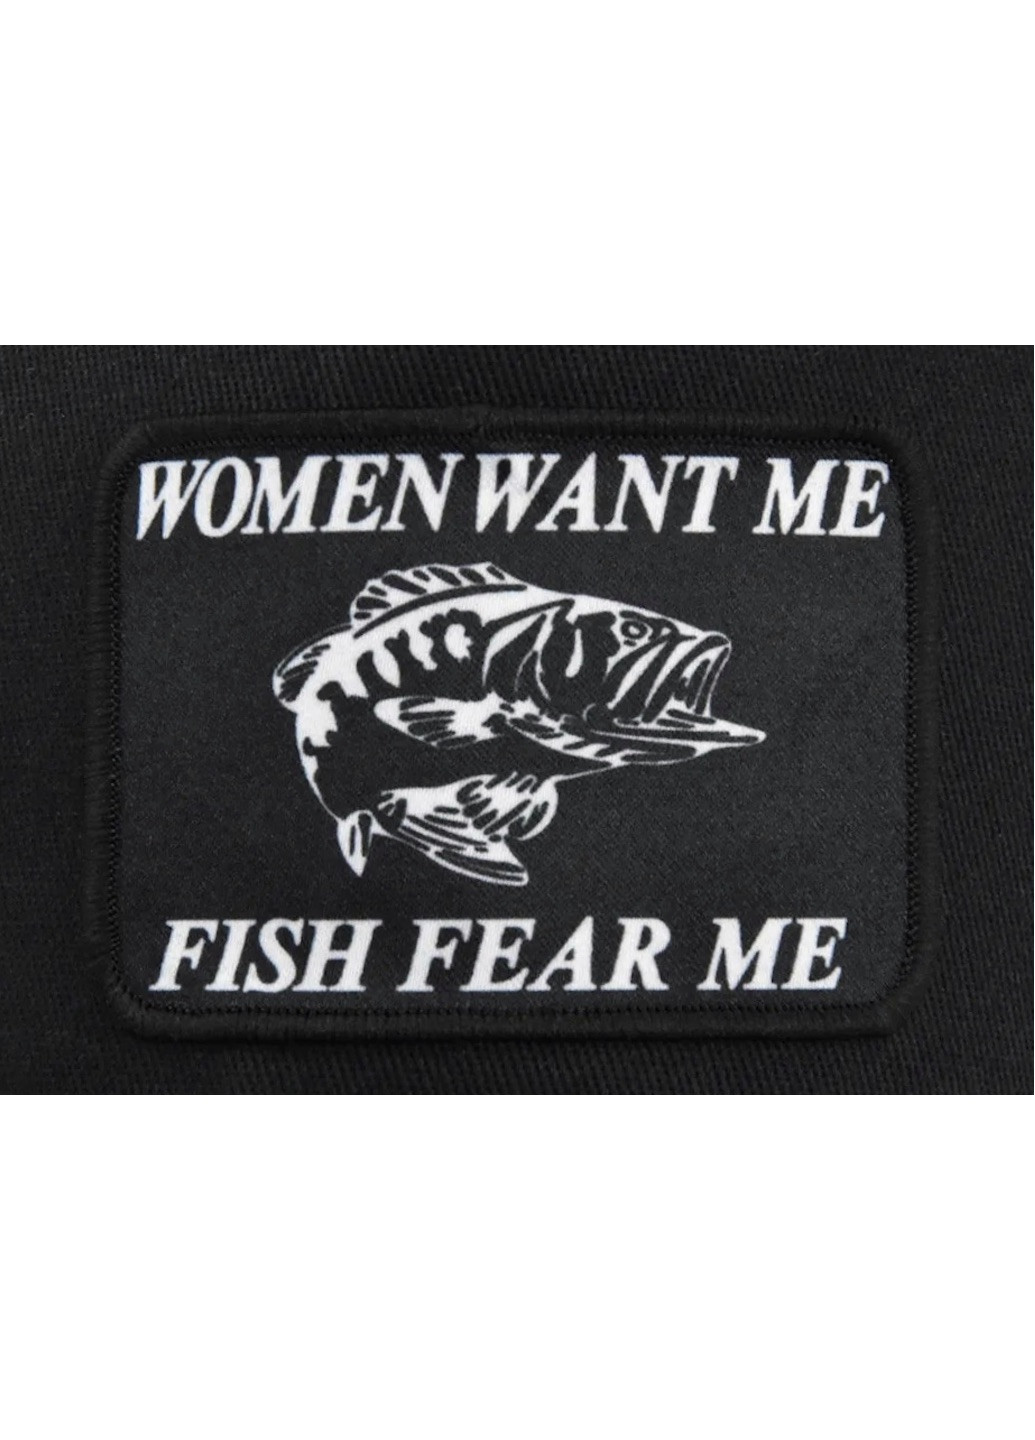 Кепка Рыба Fish женщины хотят меня-рыбы боятся меня с сеточкой Черный Унисекс WUKE One size Brand тракер (258629191)